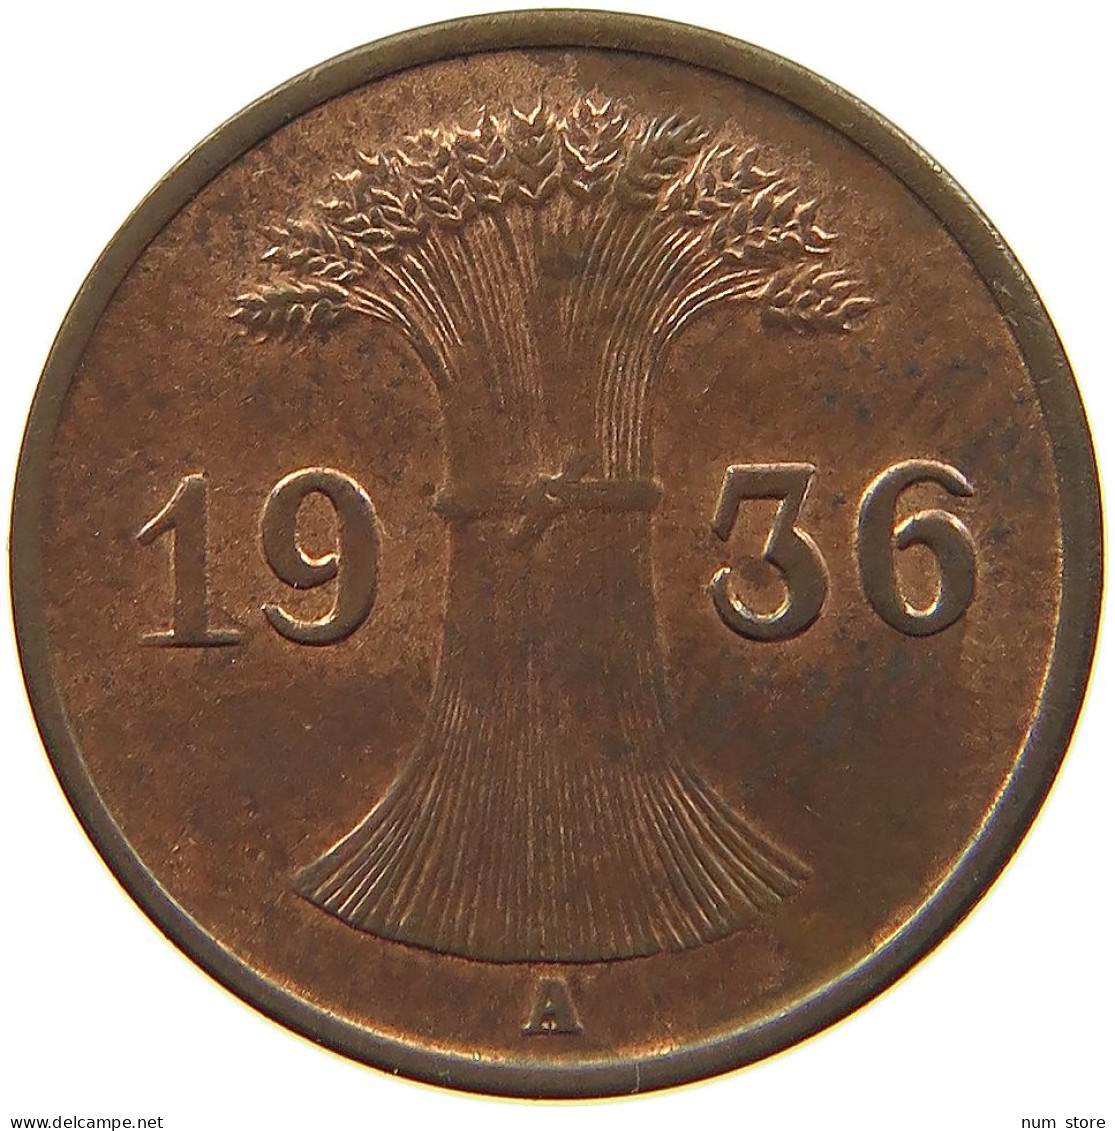 WEIMARER REPUBLIK REICHSPFENNIG 1936 A  #MA 100169 - 1 Rentenpfennig & 1 Reichspfennig